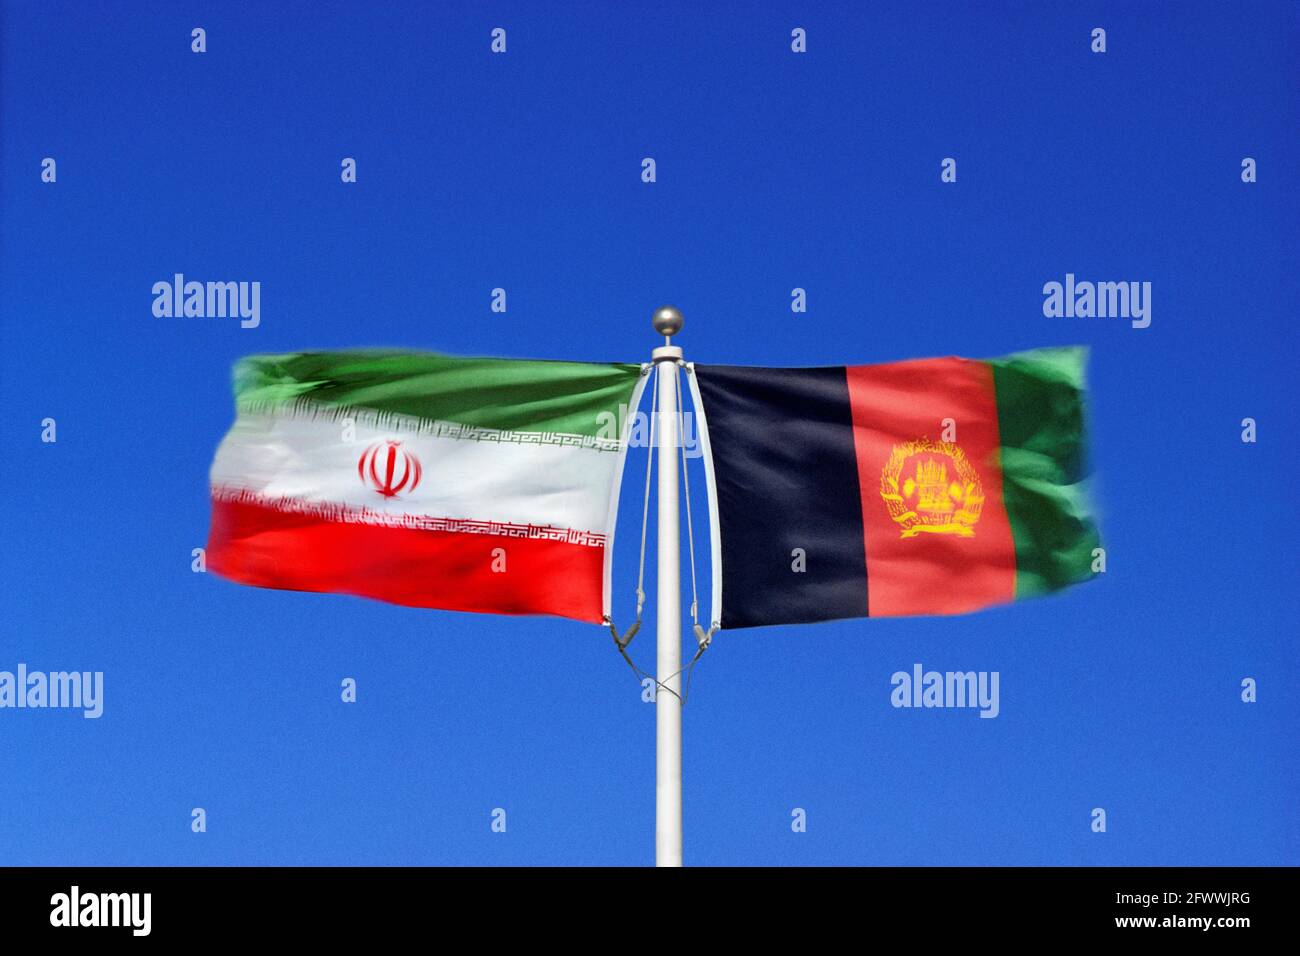 Iranische und afghanische Flaggen schwingen Seite an Seite in gegenläufigen Winden auf einem einzigen Fahnenmast. Digitales Composite. Stockfoto